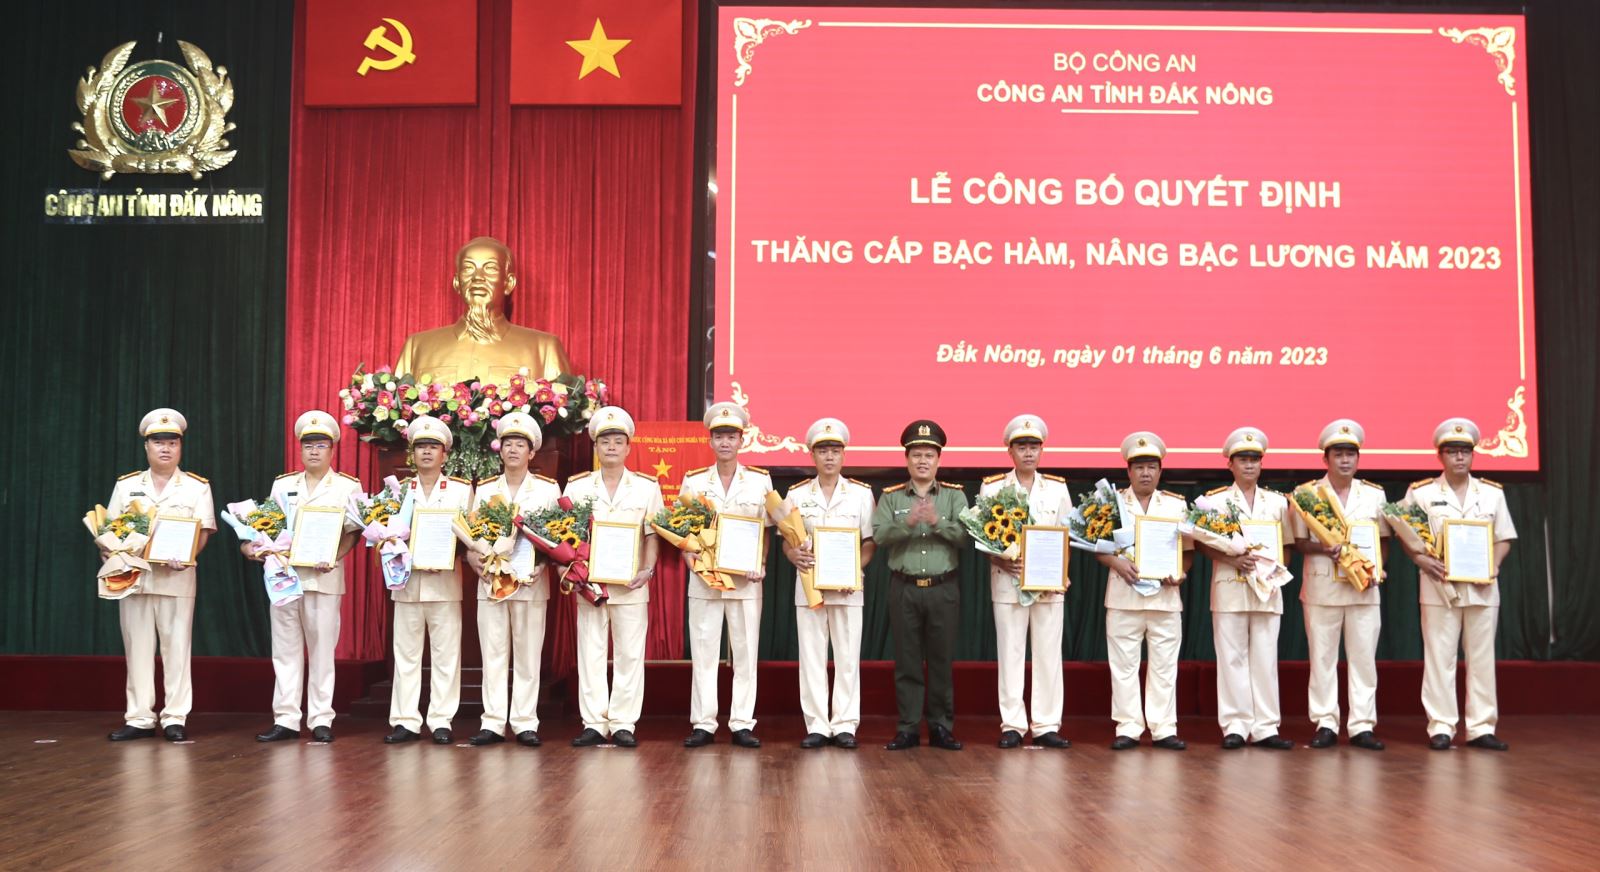 Công an tỉnh Đắk Nông tổ chức Lễ thăng cấp bậc hàm, nâng bậc lương năm 2023